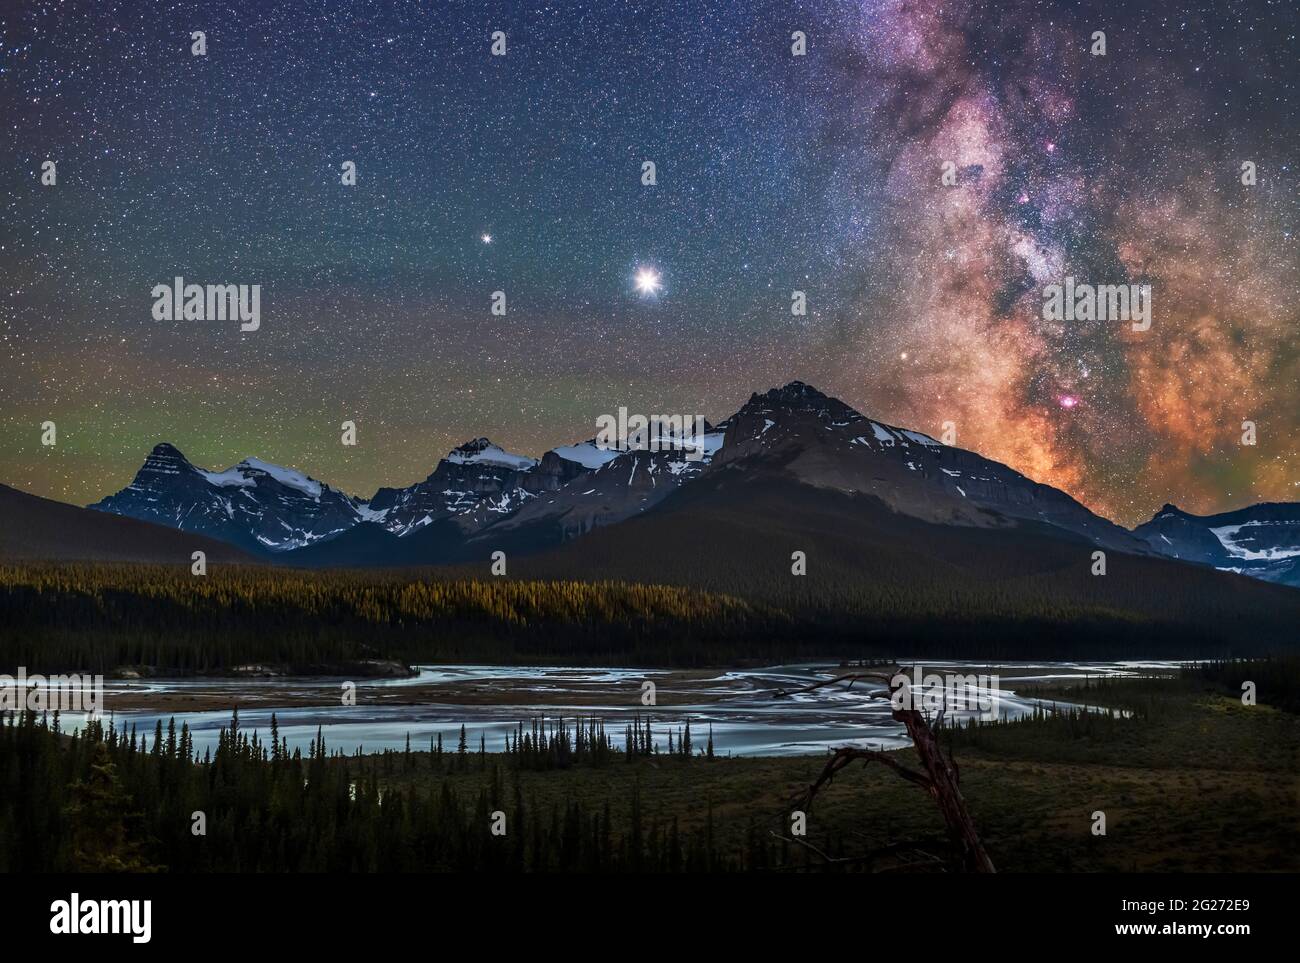 Milky Way, Jupiter et Saturne au-dessus de la rivière Saskatchewan et du mont Chephren, Canada. Banque D'Images